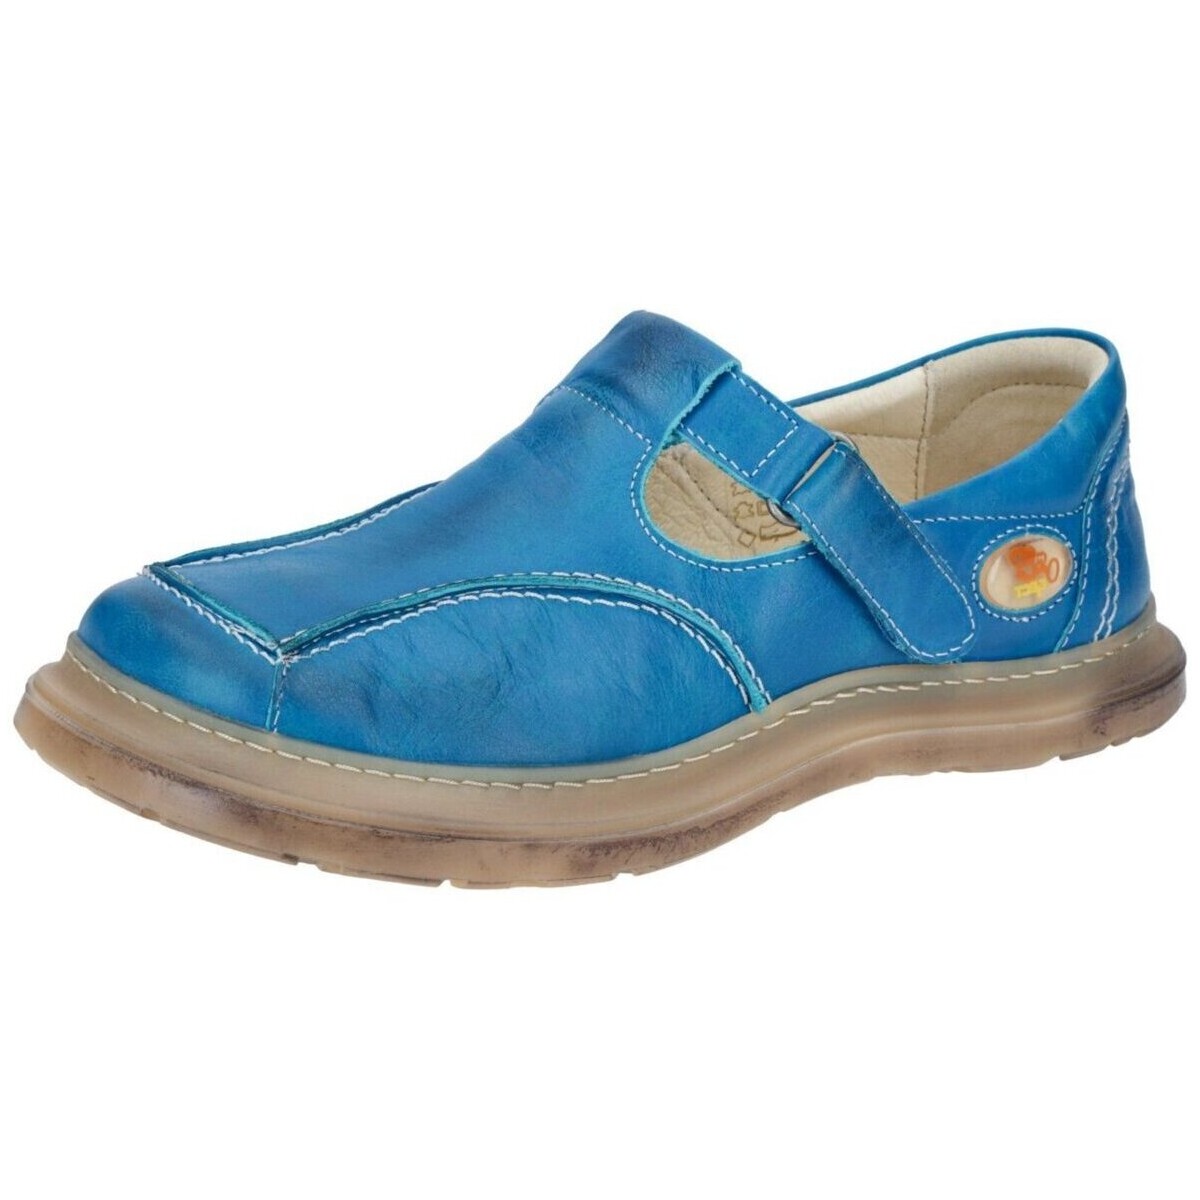 Schuhe Damen Slipper Eject Slipper Sony2 Schuhe 7573 7573.005 Blau